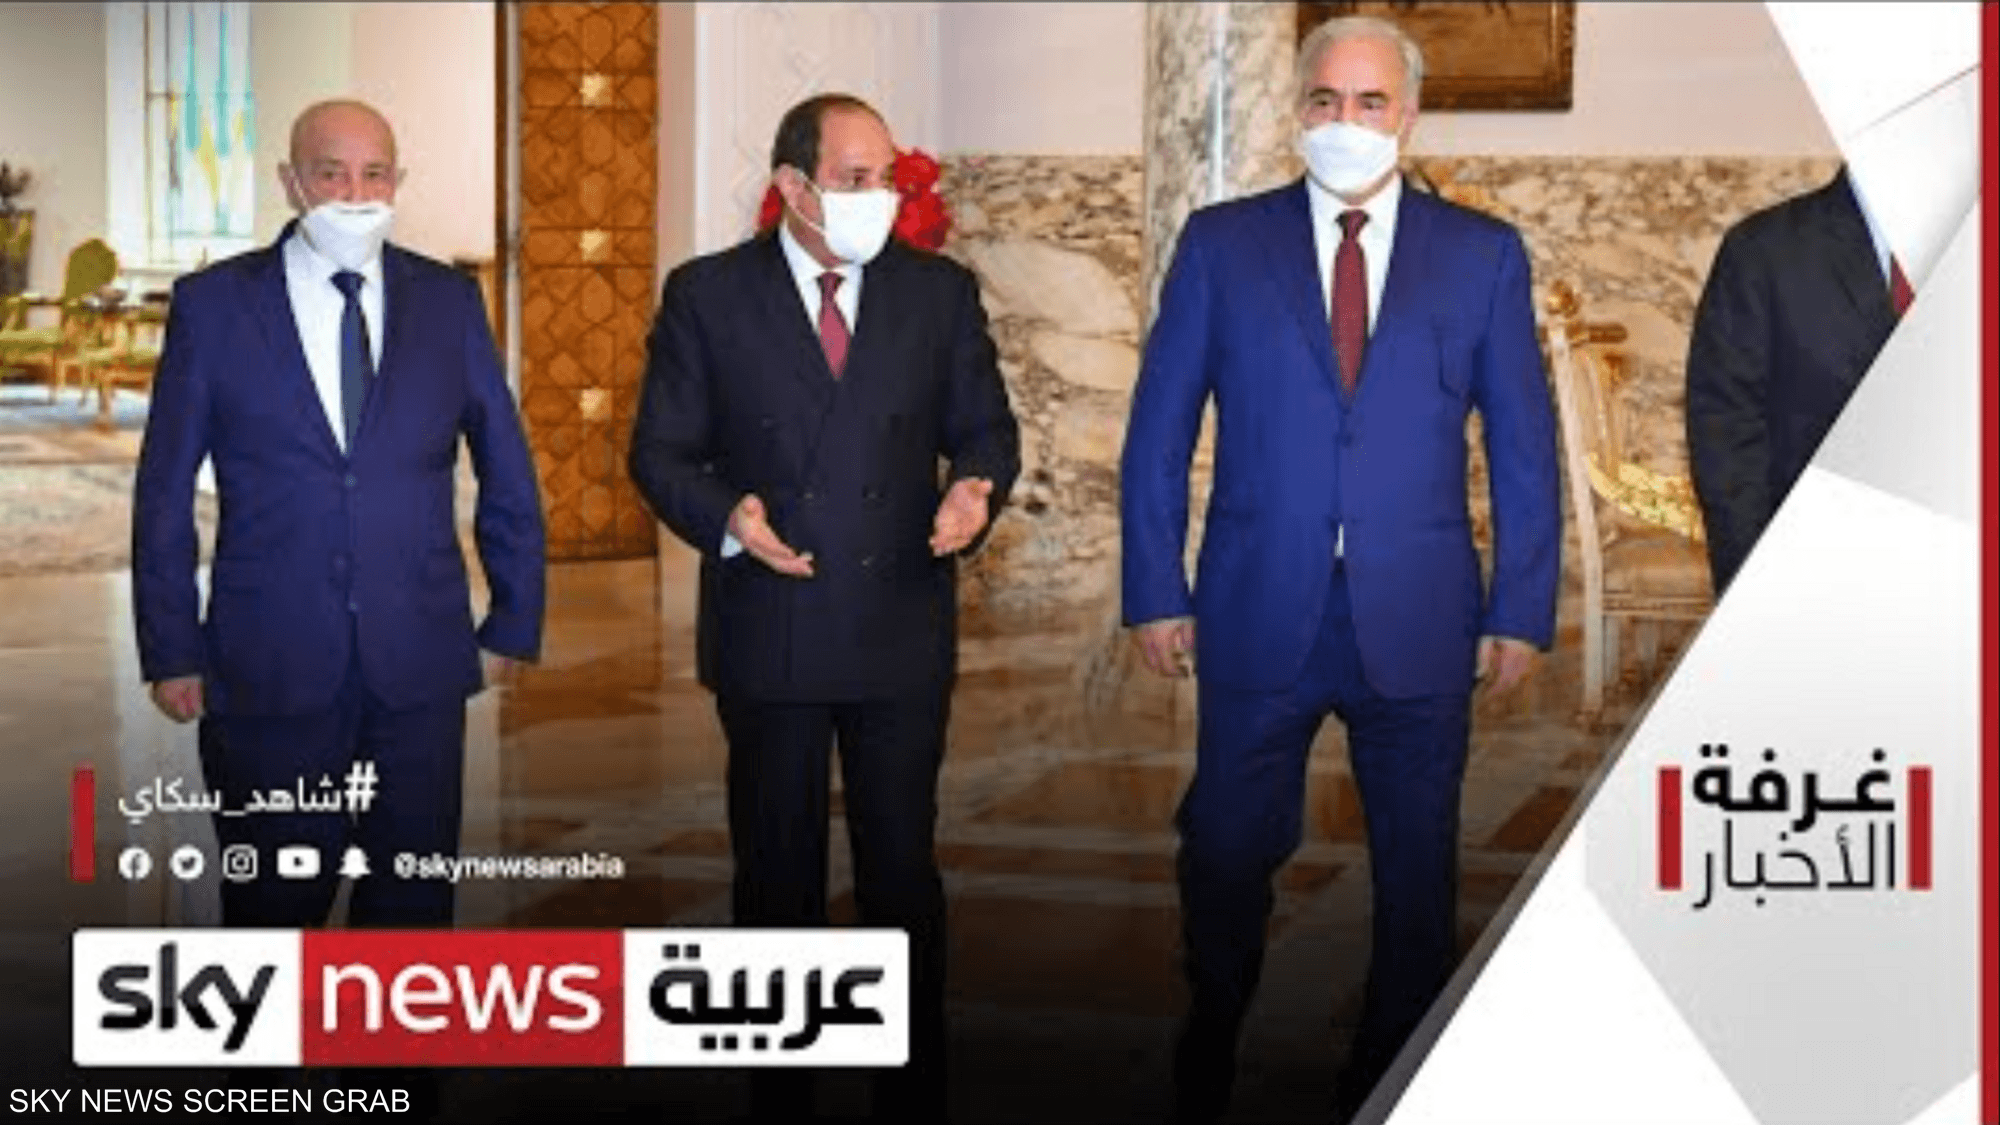 الملفات الليبية في لقاء بين السيسي وعقيلة صالح وحفتر